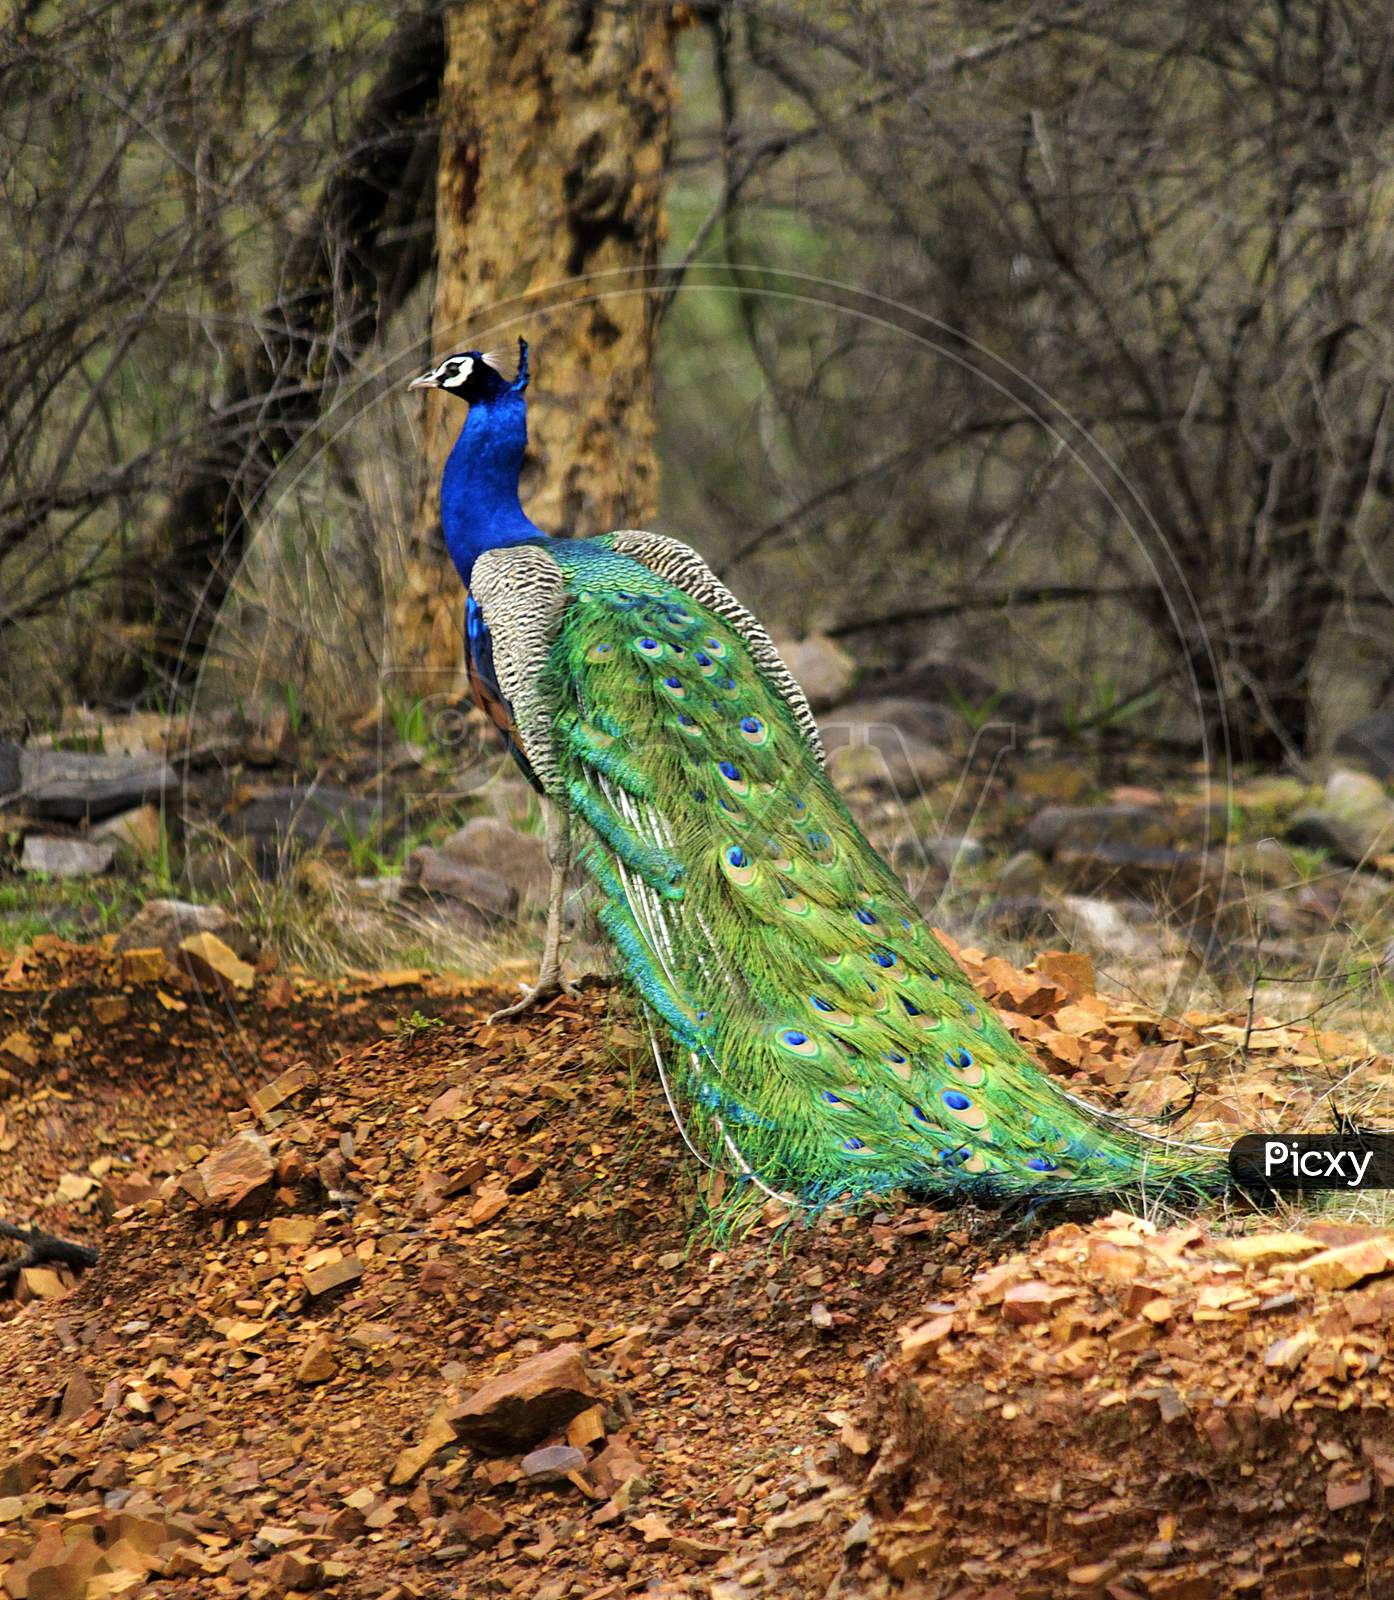 Peacock at Rathambore National Park